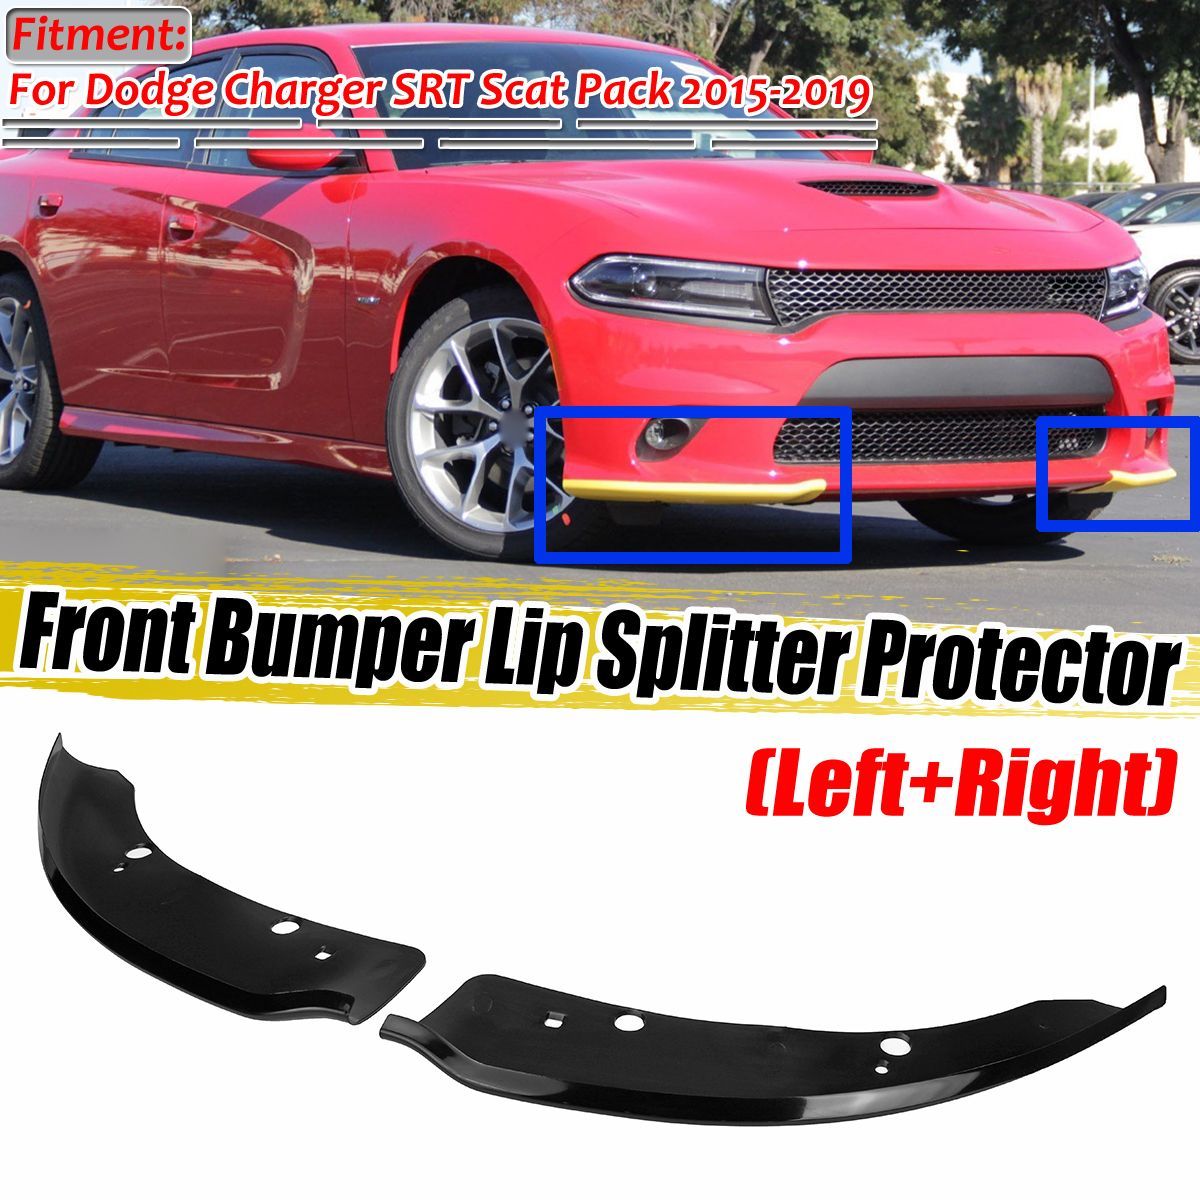 Front-Bumper-Lip-Splitter-Protector-Black-For-Dodge-Charger-SRT-Scat-Pack-2015-2019-1684870